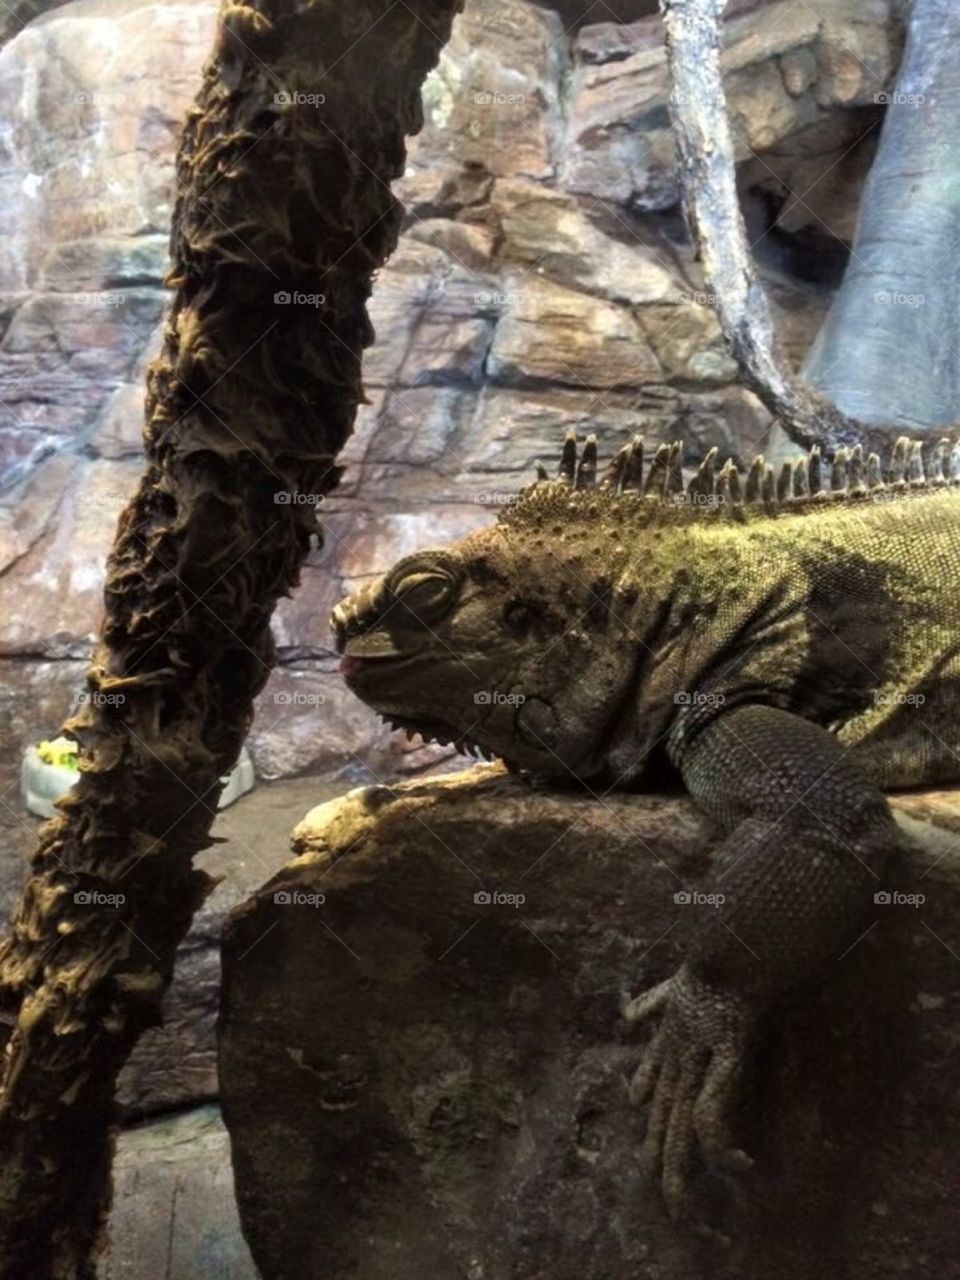 Iguana in the Ripley's Aquarium